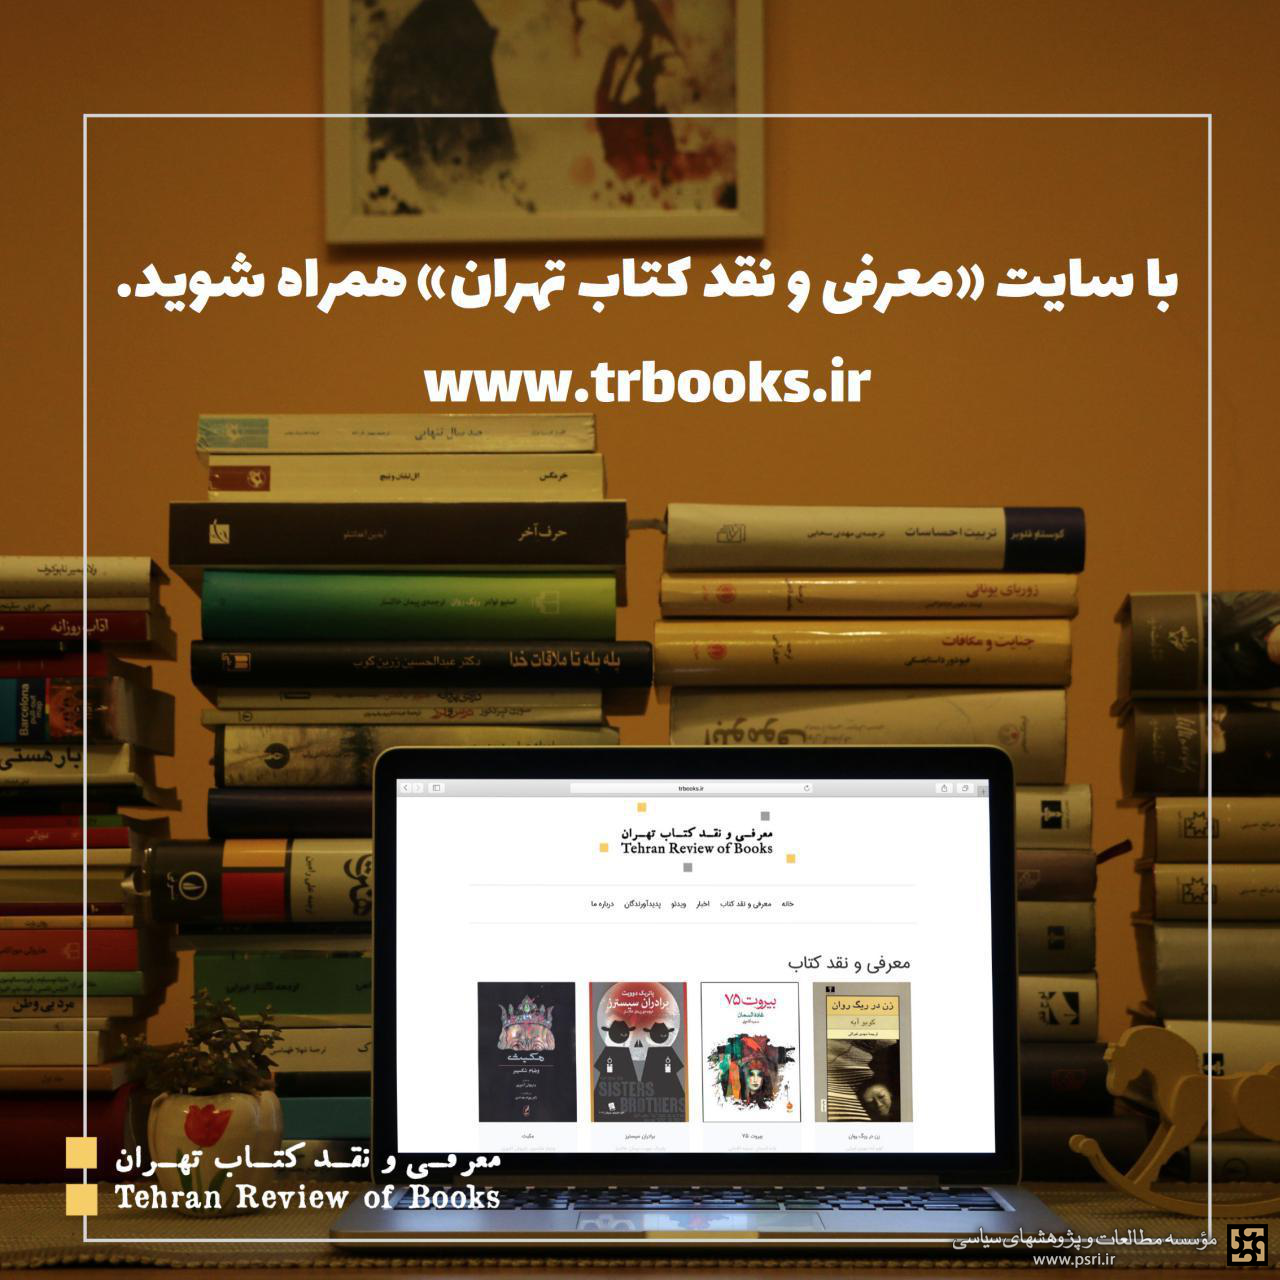 رونمایی سایت «معرفی و نقد کتاب تهران